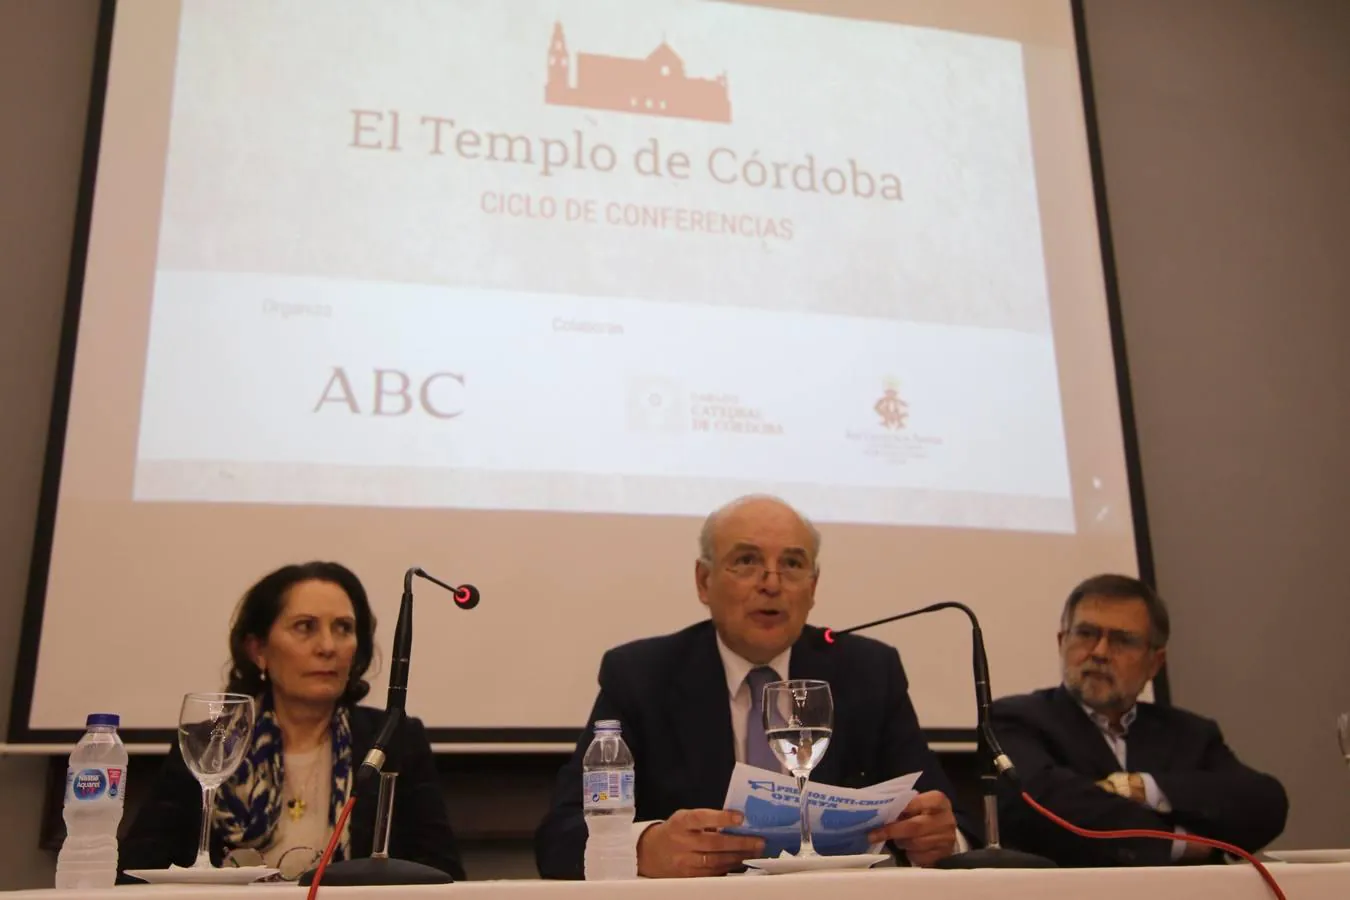 Sánchez Saus en el foro «El templo de Córdoba» de ABC, en imágenes